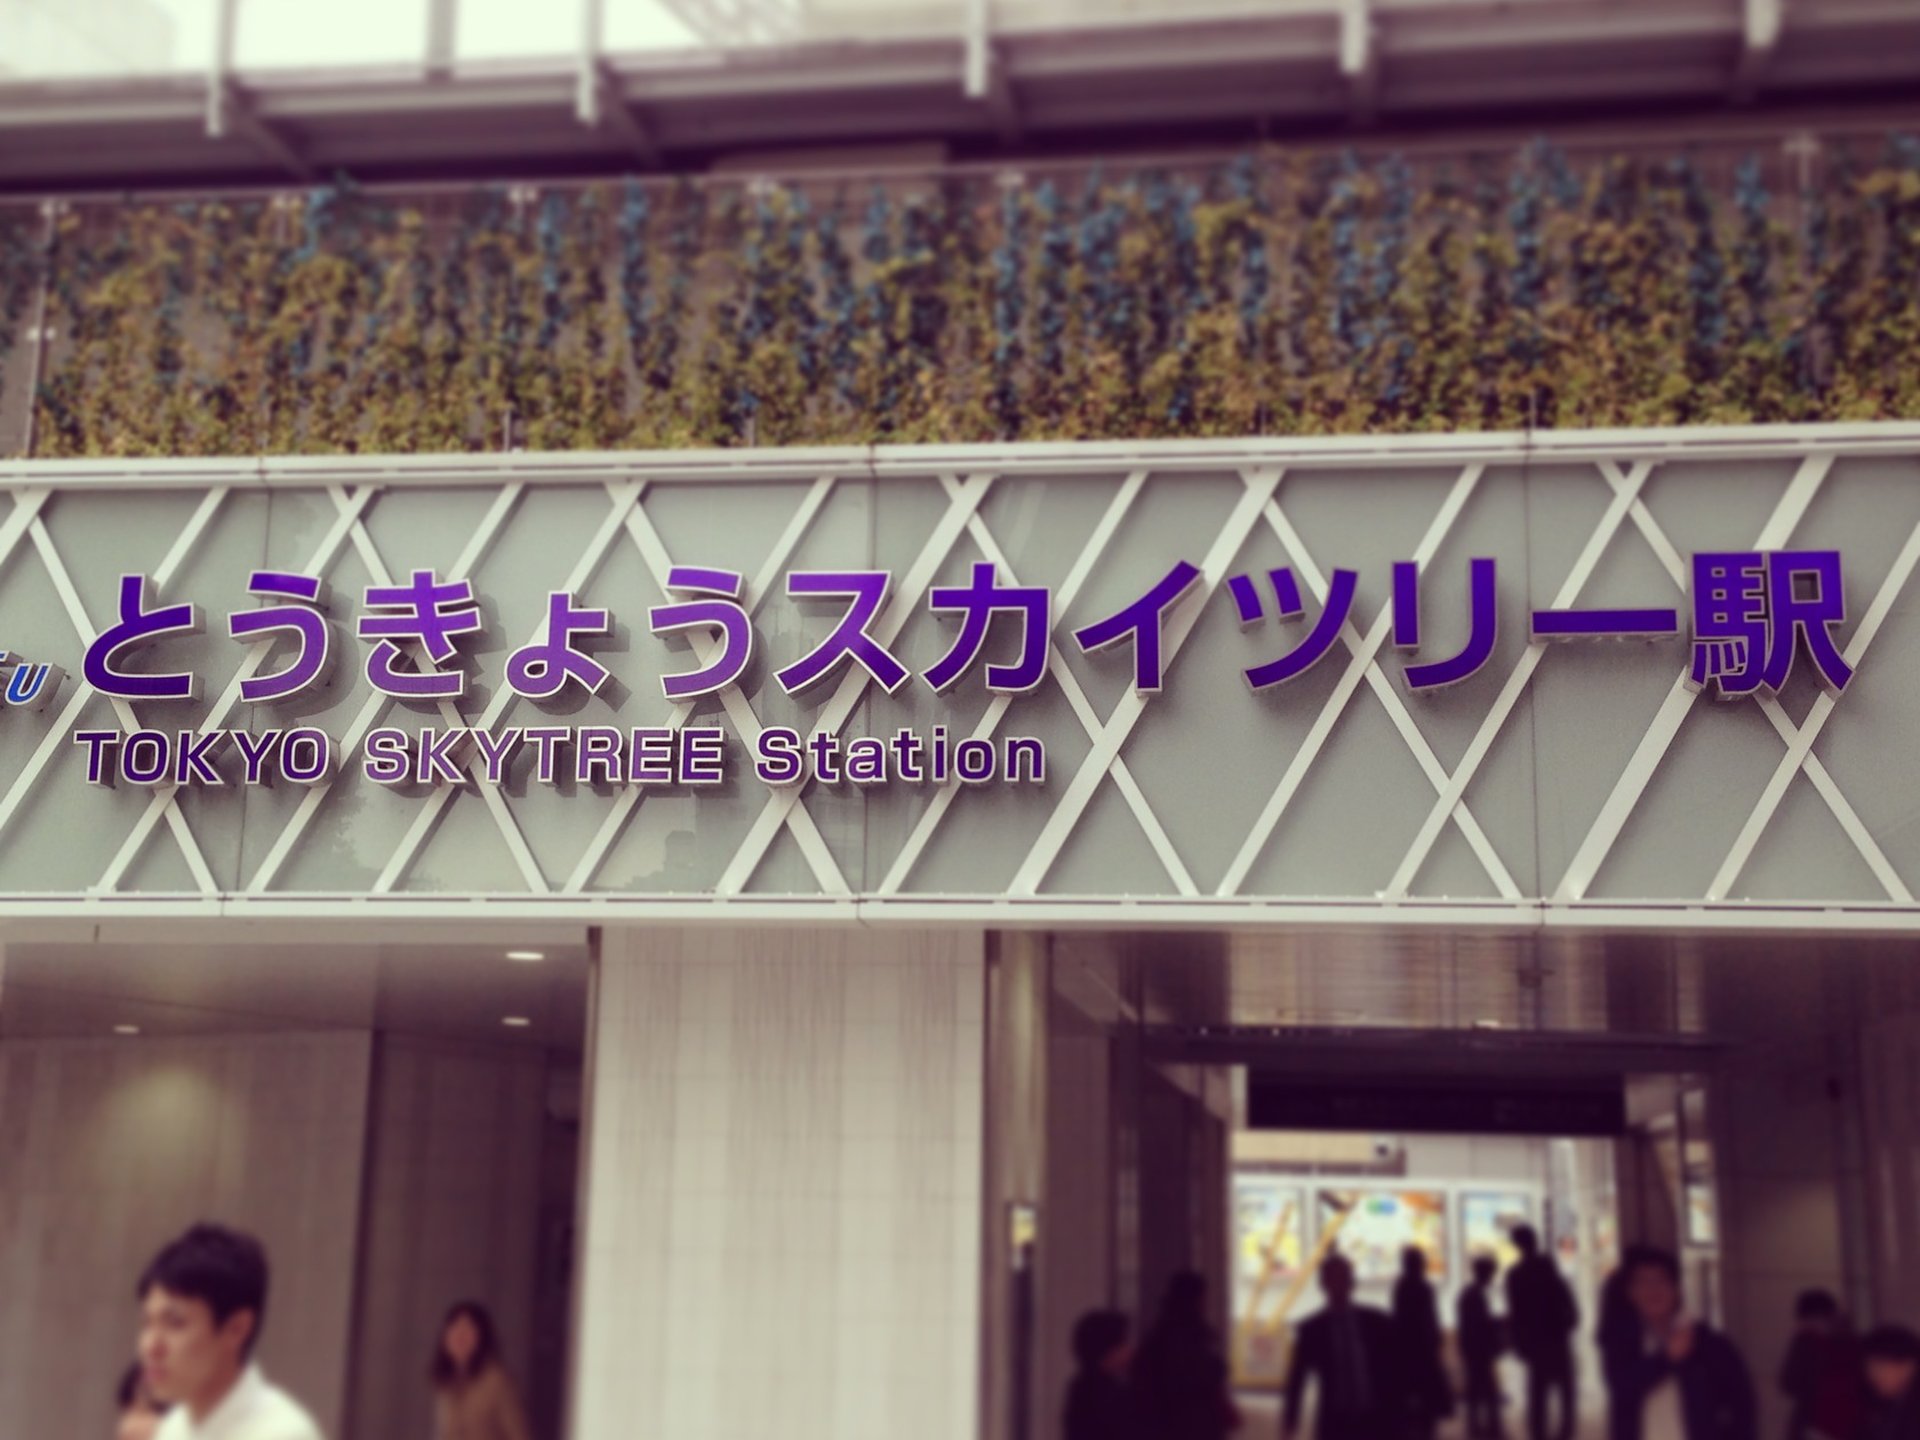 東武鉄道株式会社 とうきょうスカイツリー駅